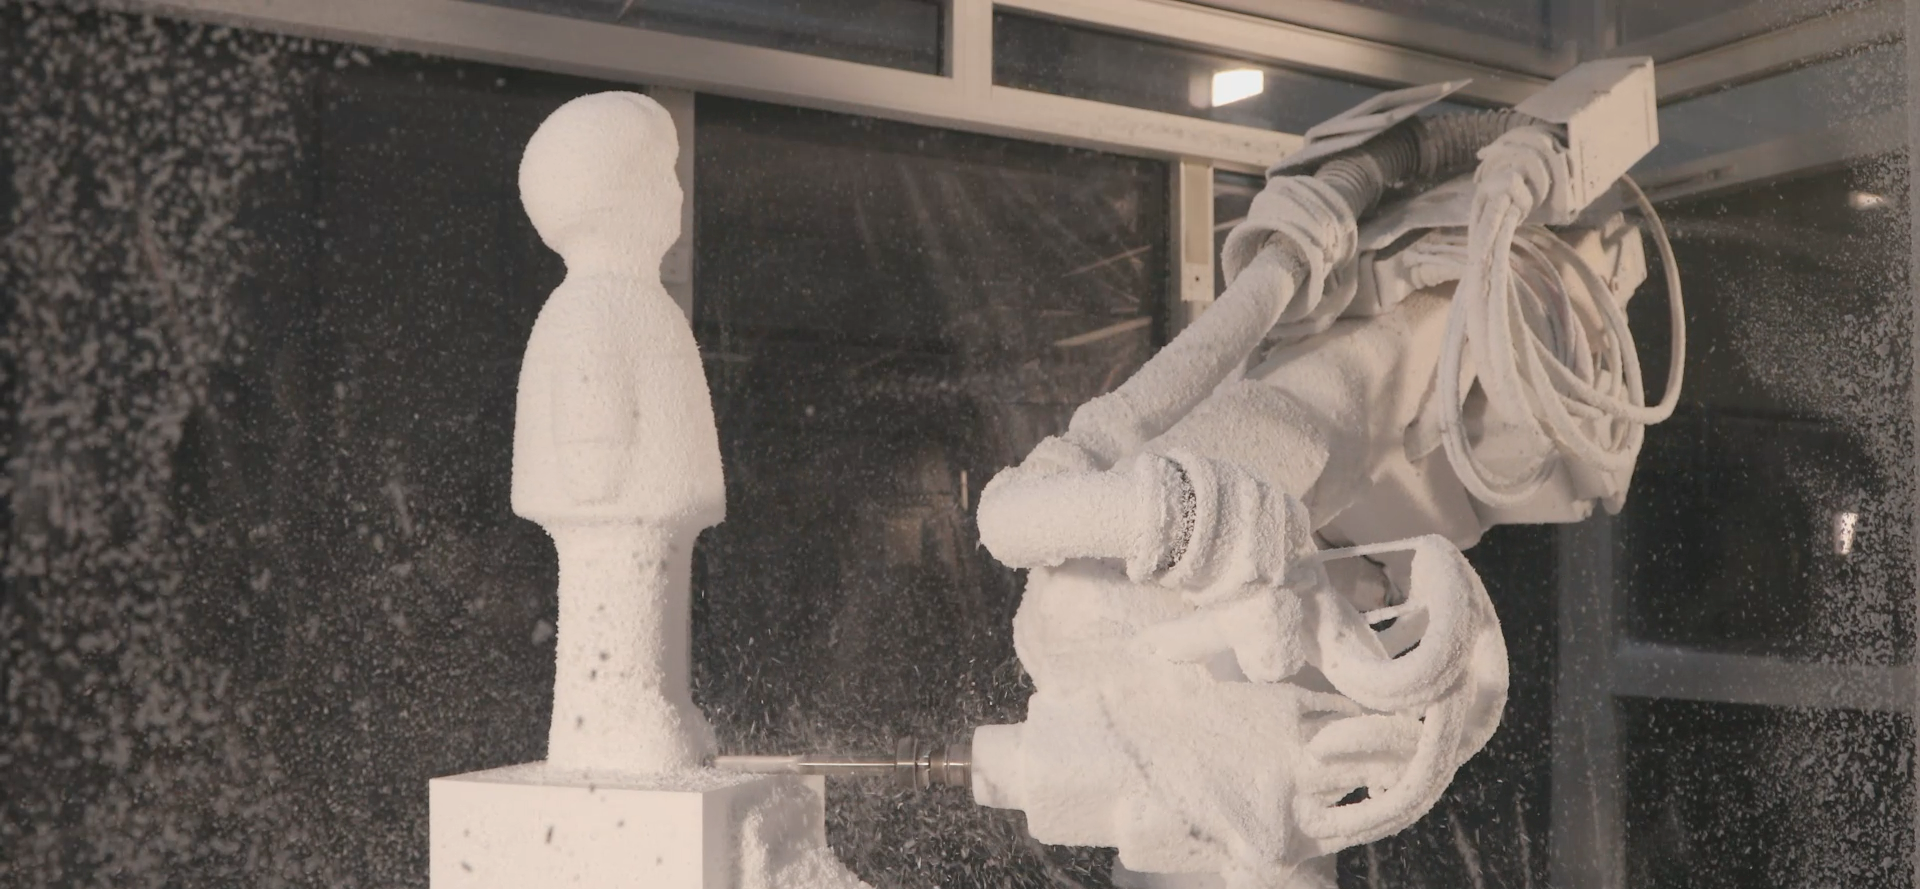 Ausschnitt aus der Dokumentation „when robots make art“ - Roboter fräst Engels2020-Skulptur